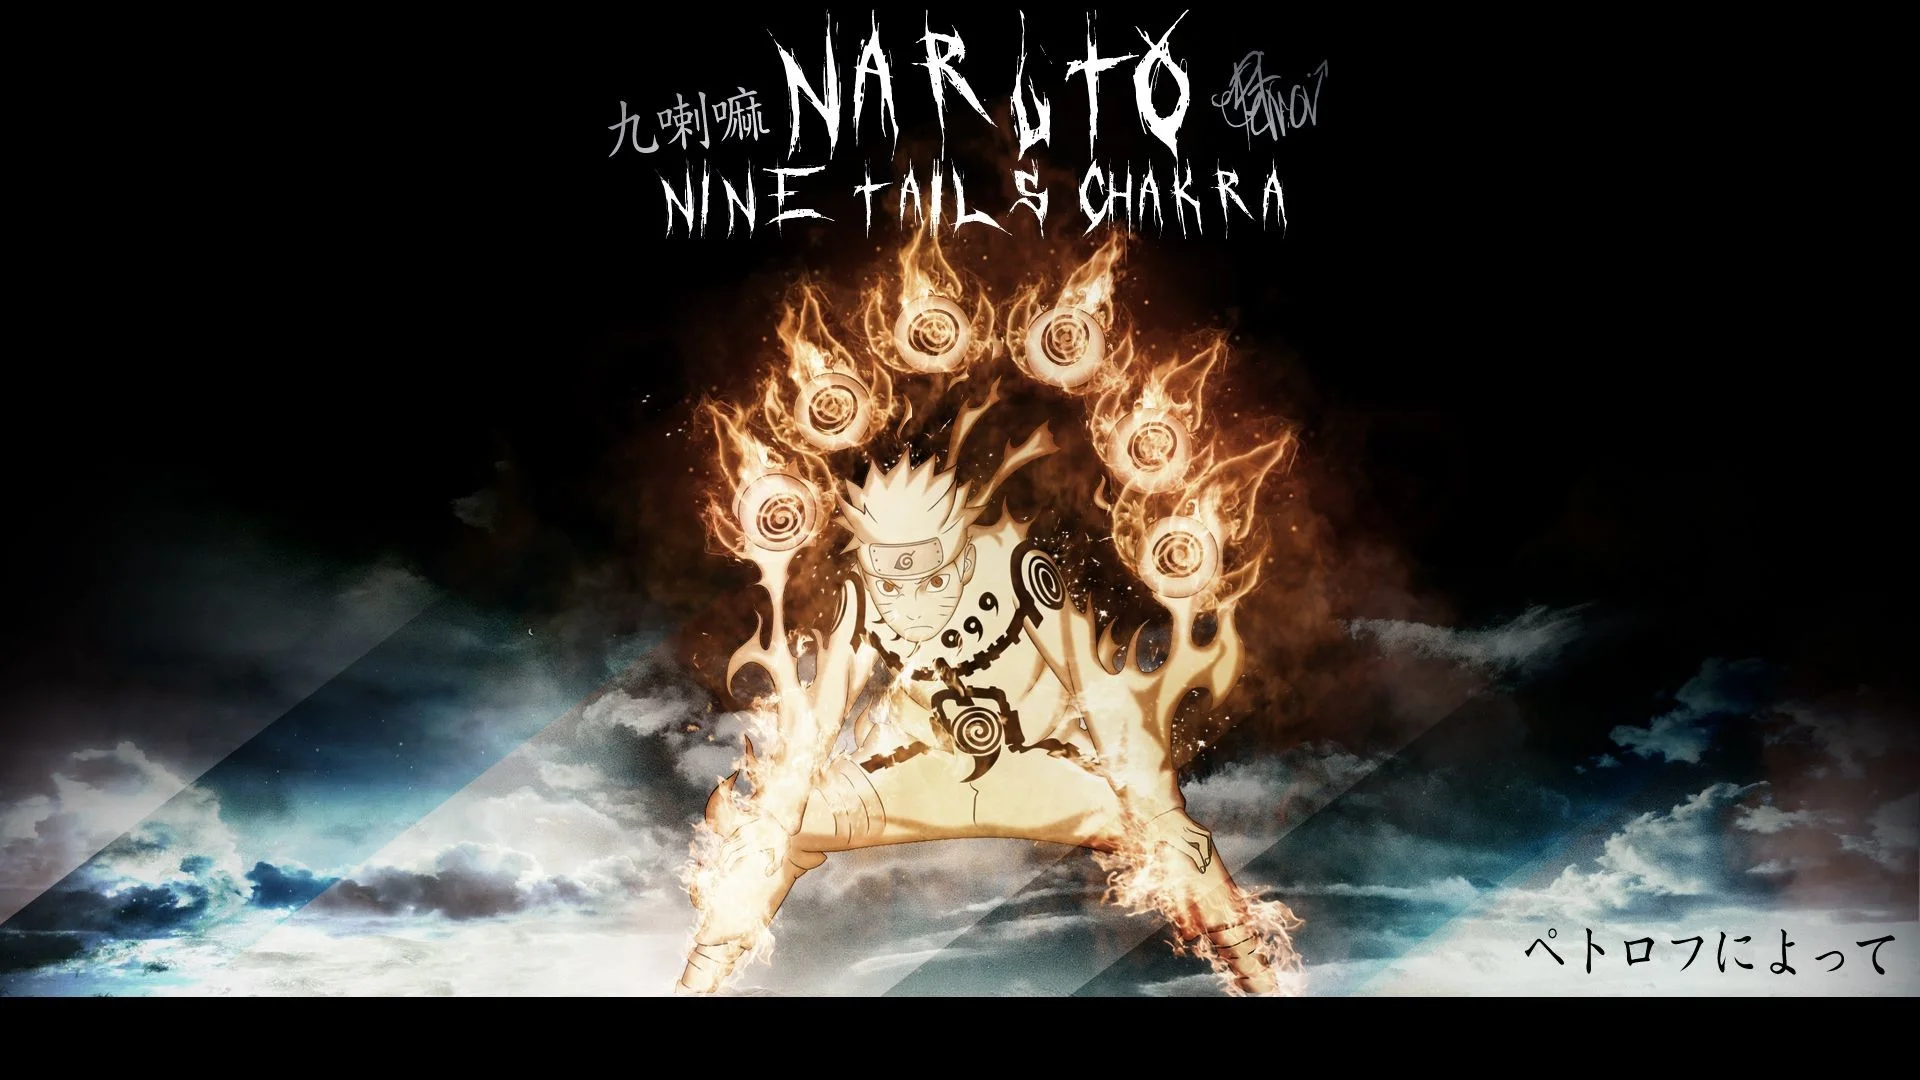 Naruto Nine tails chakra by HaseoBg on DeviantArt